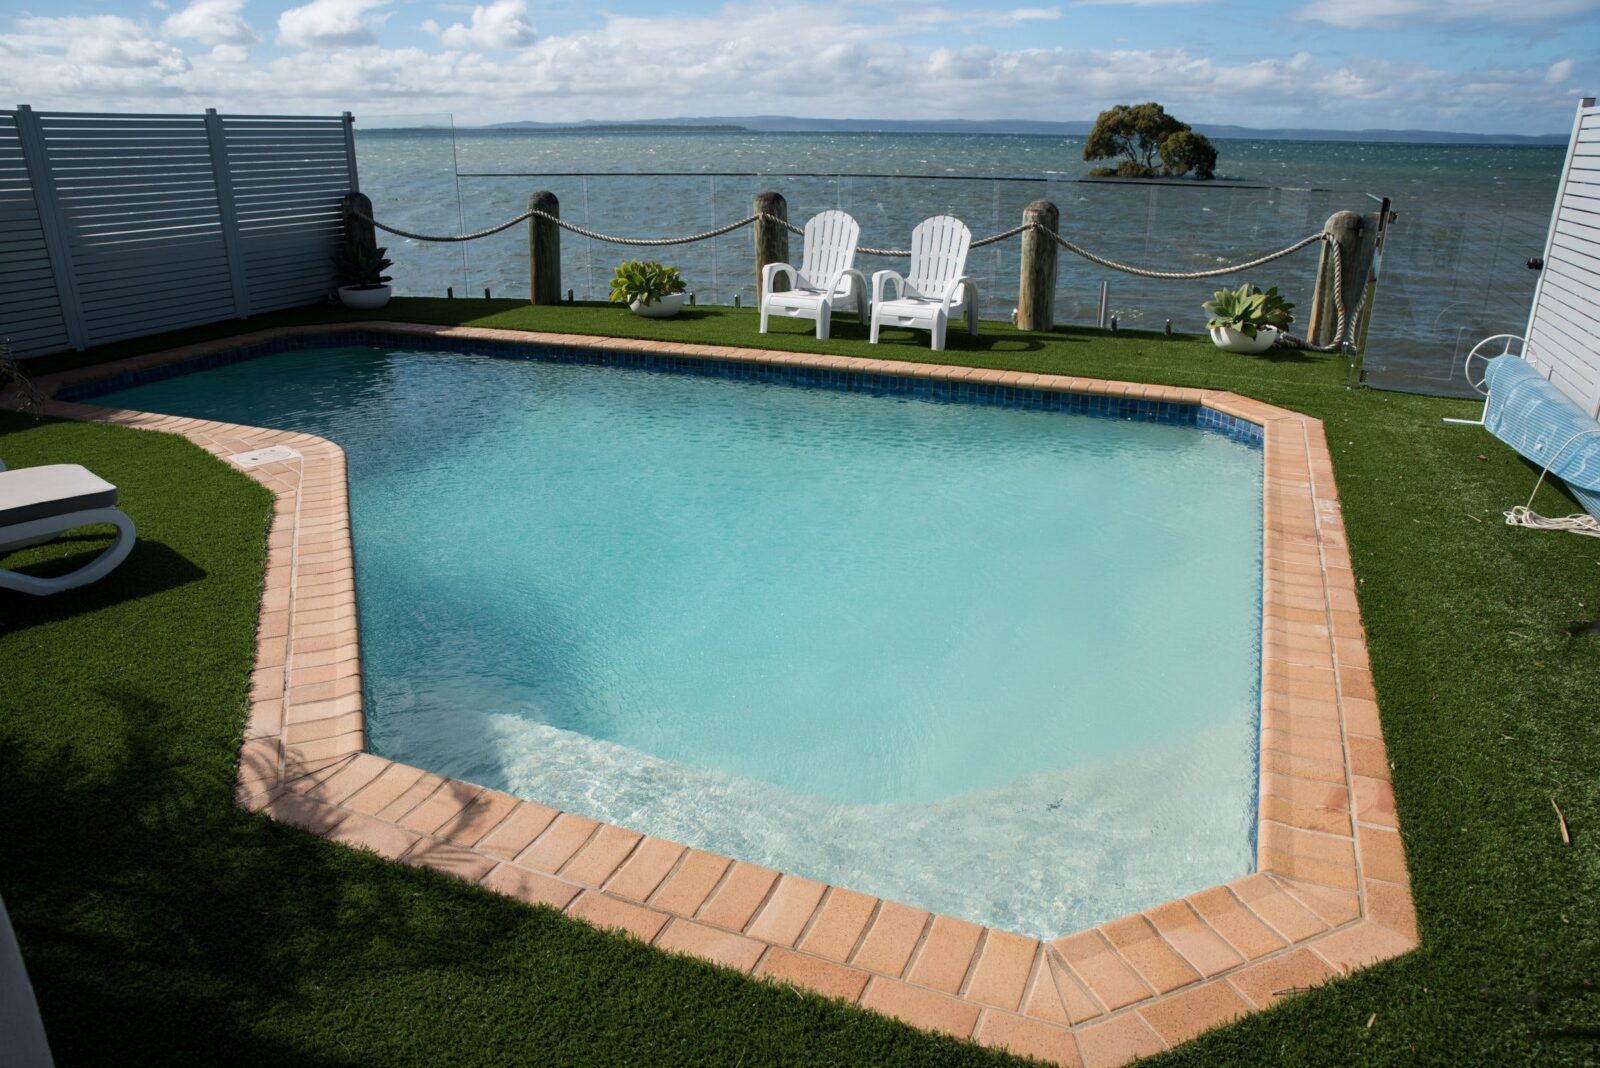 Pool overlooking Moreton Bay